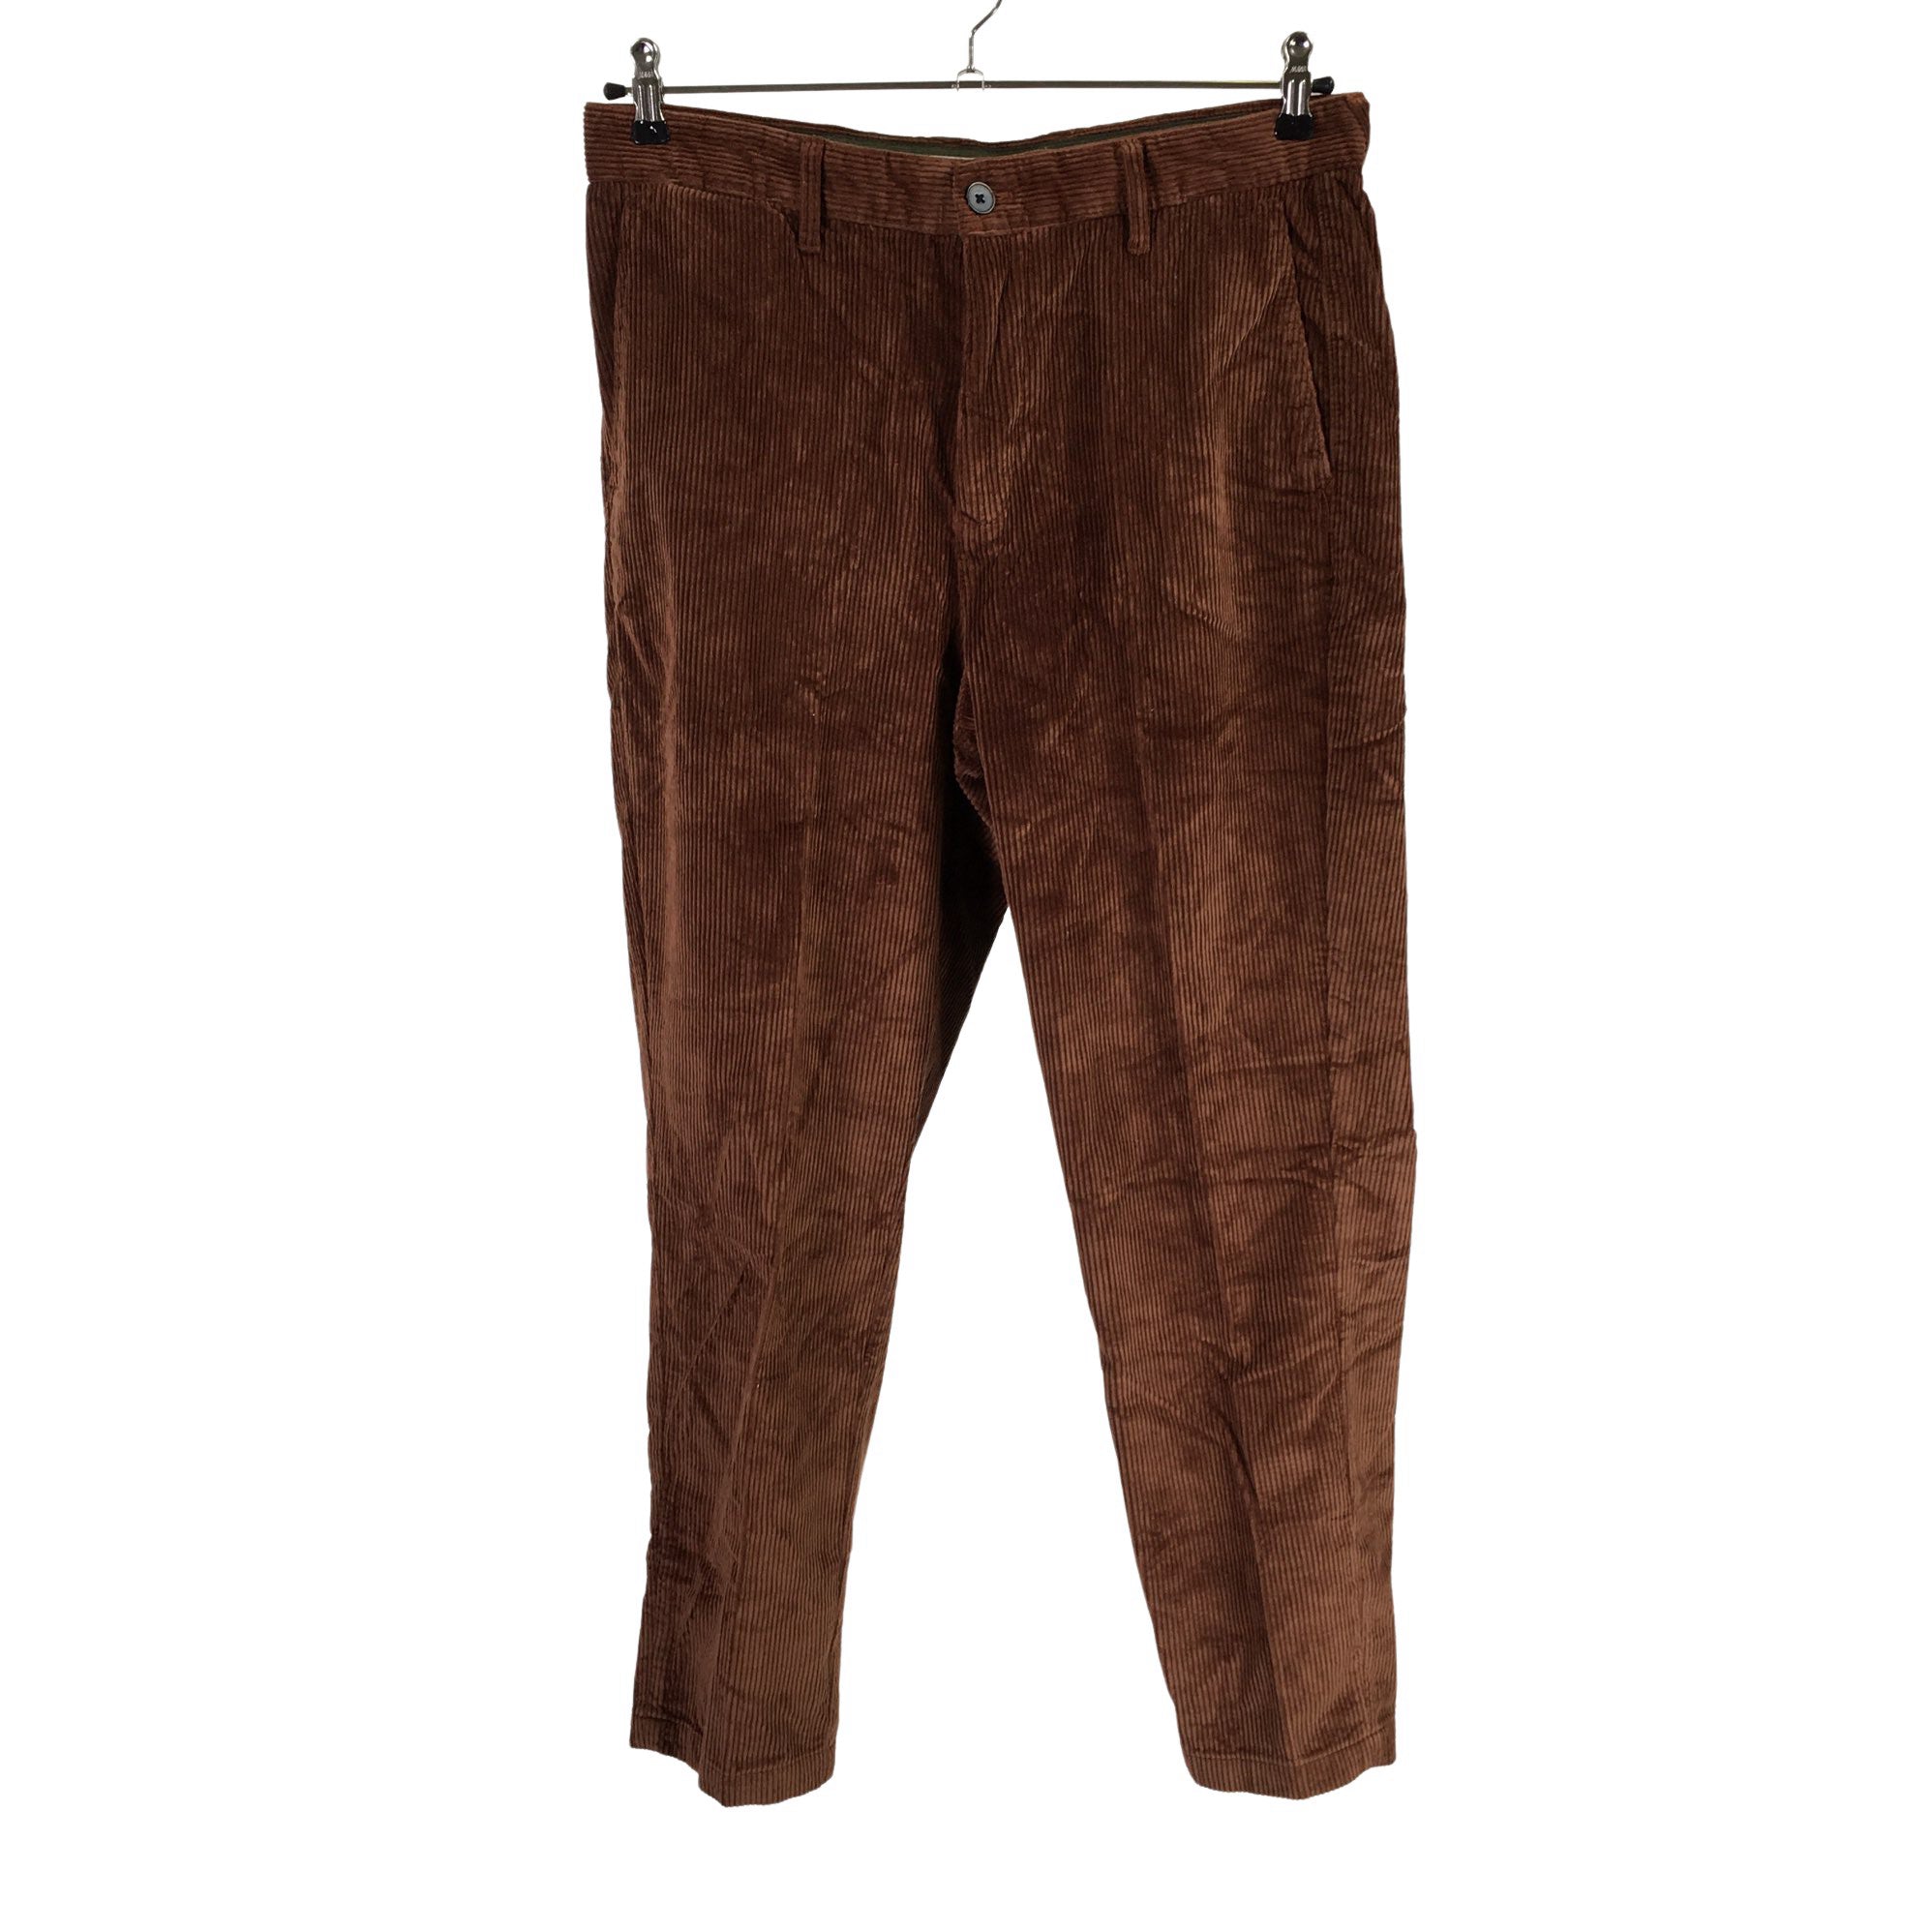 Brown velvet pants for Men